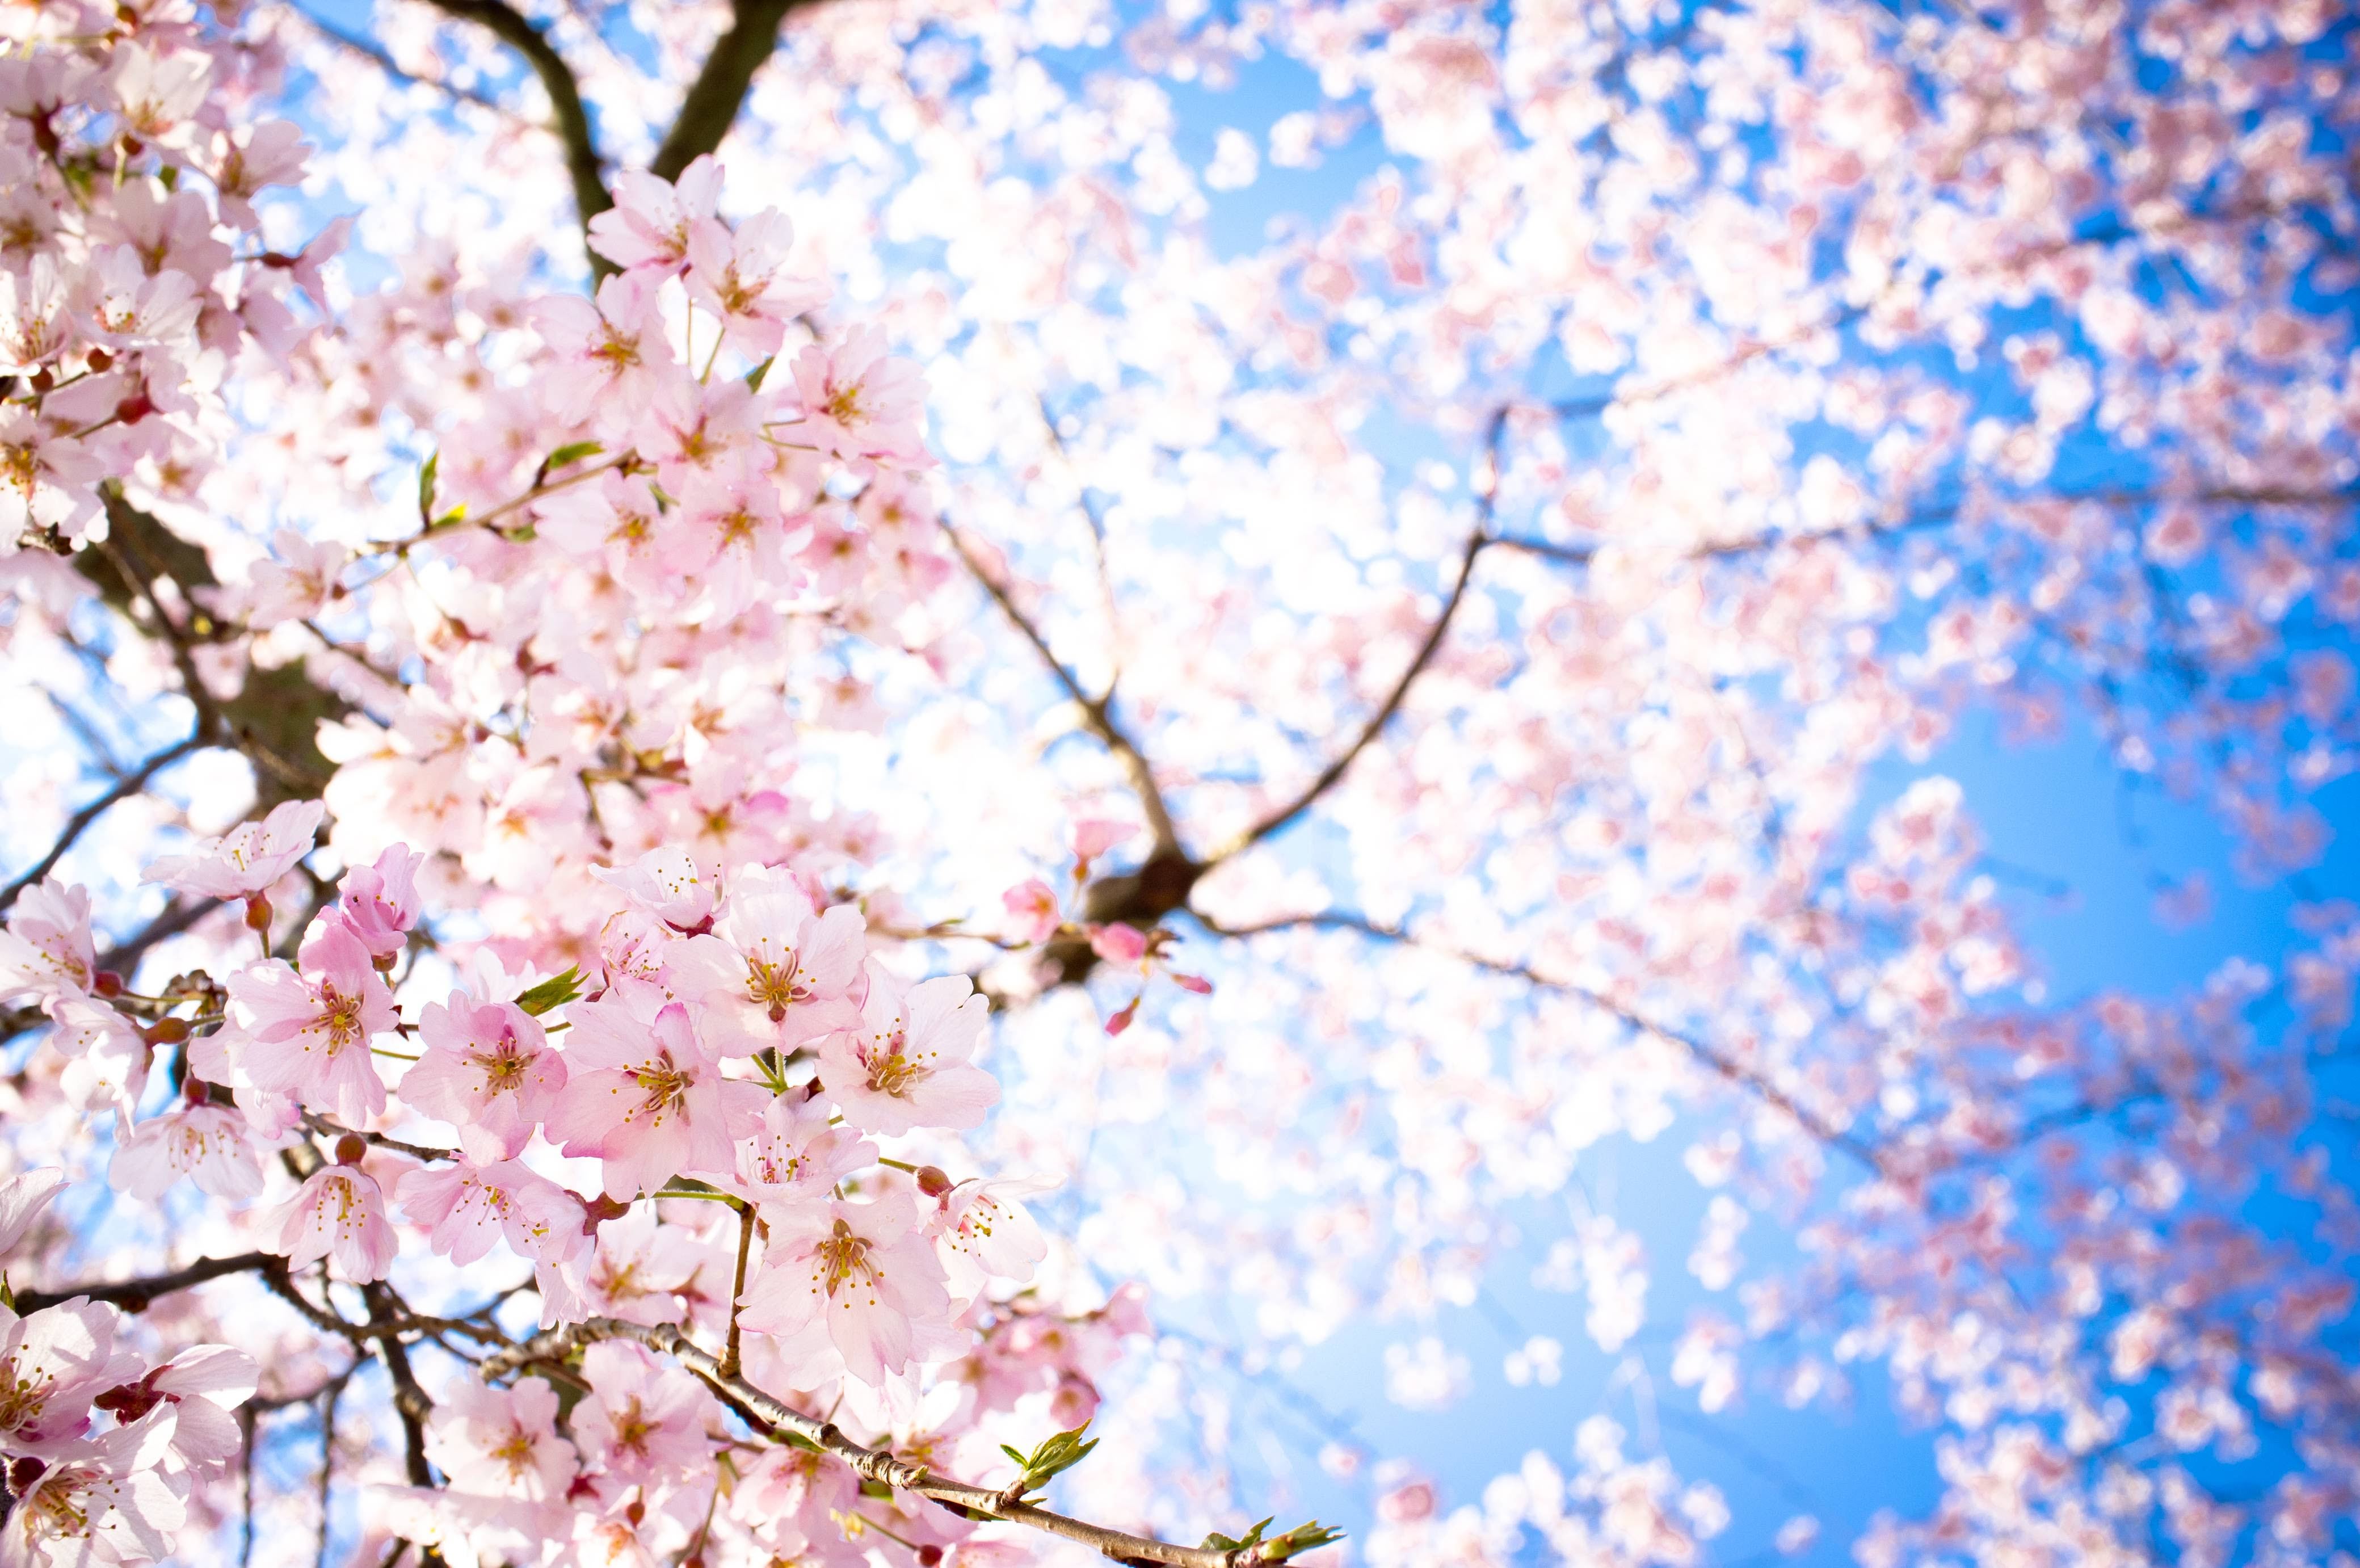 Download 880 Background Hitam Sakura Gratis Terbaik